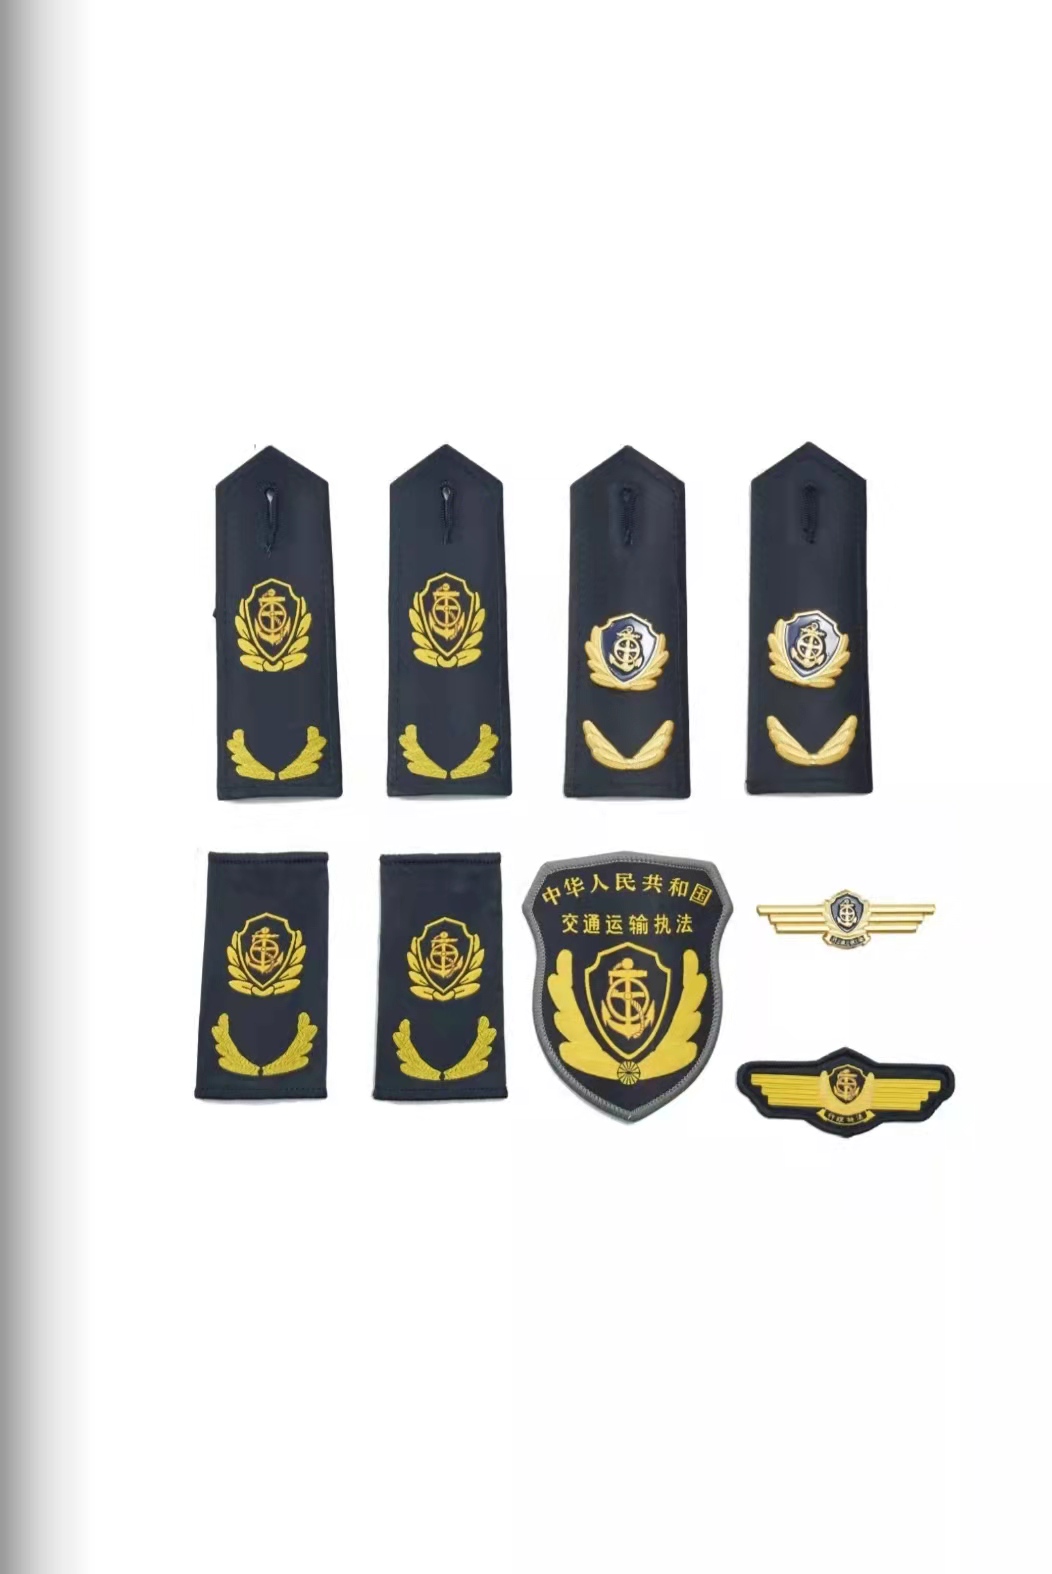 三亚六部门统一交通运输执法服装标志